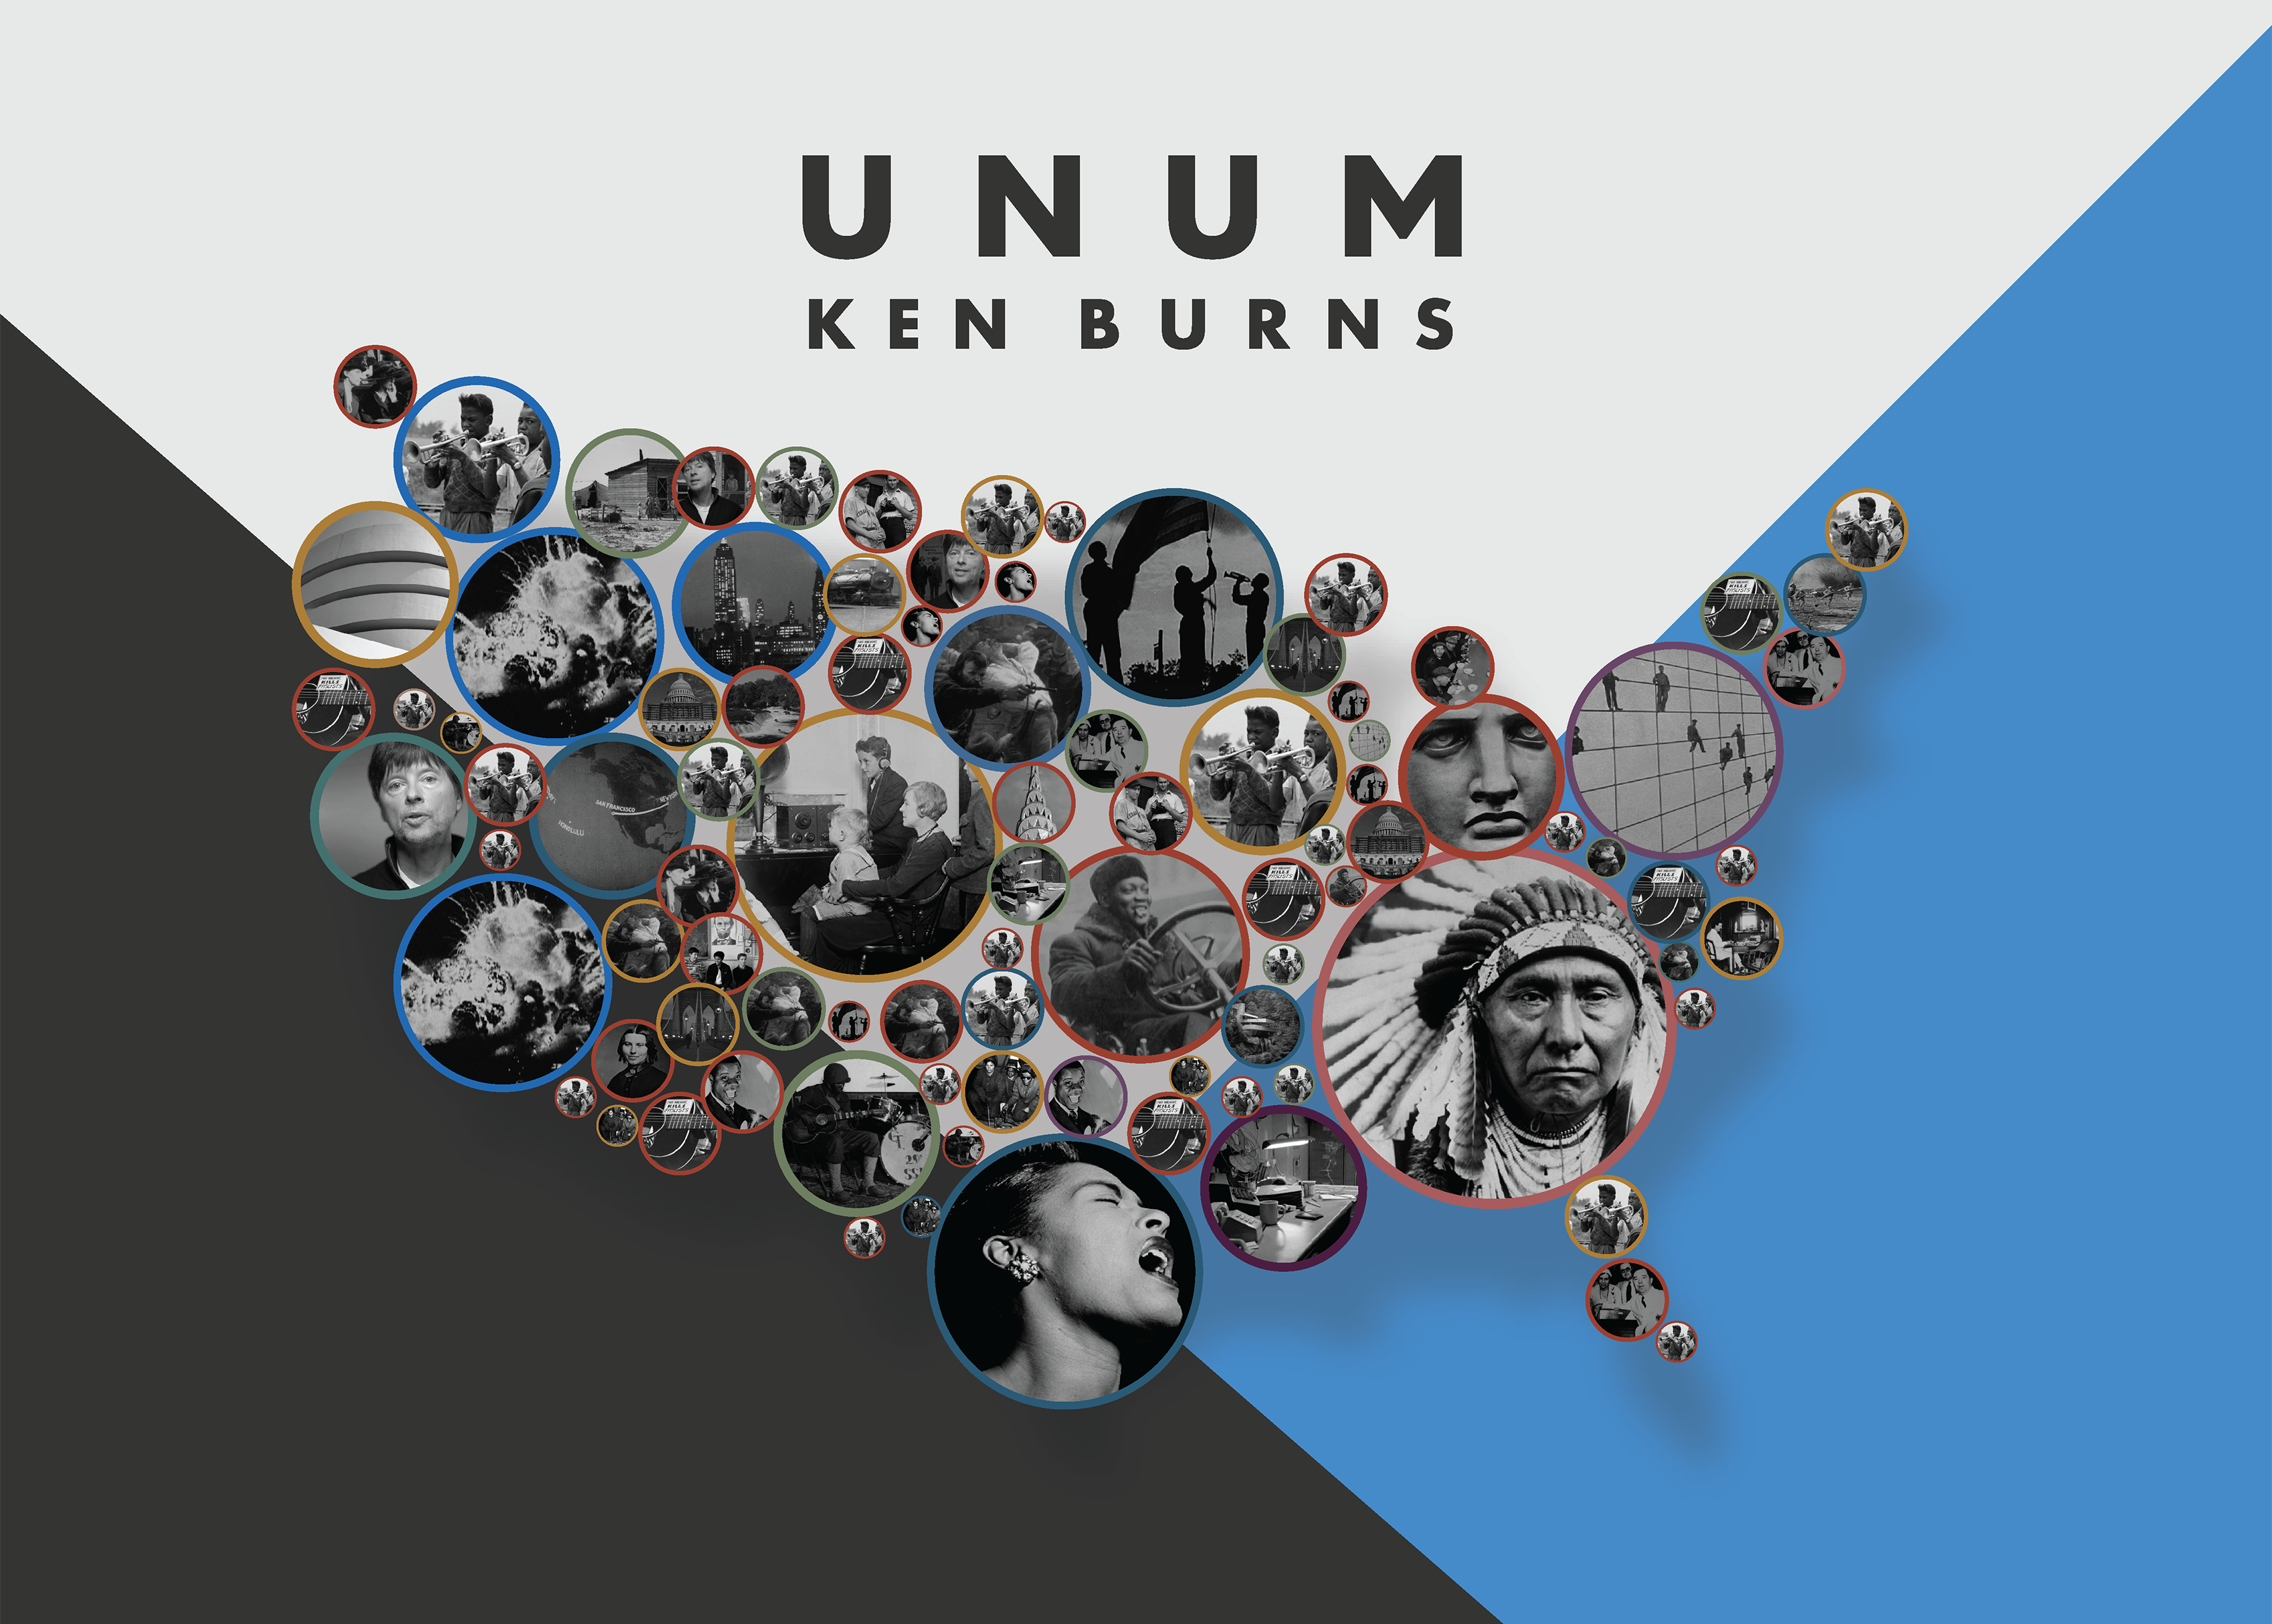 Ken Burns's UNUM